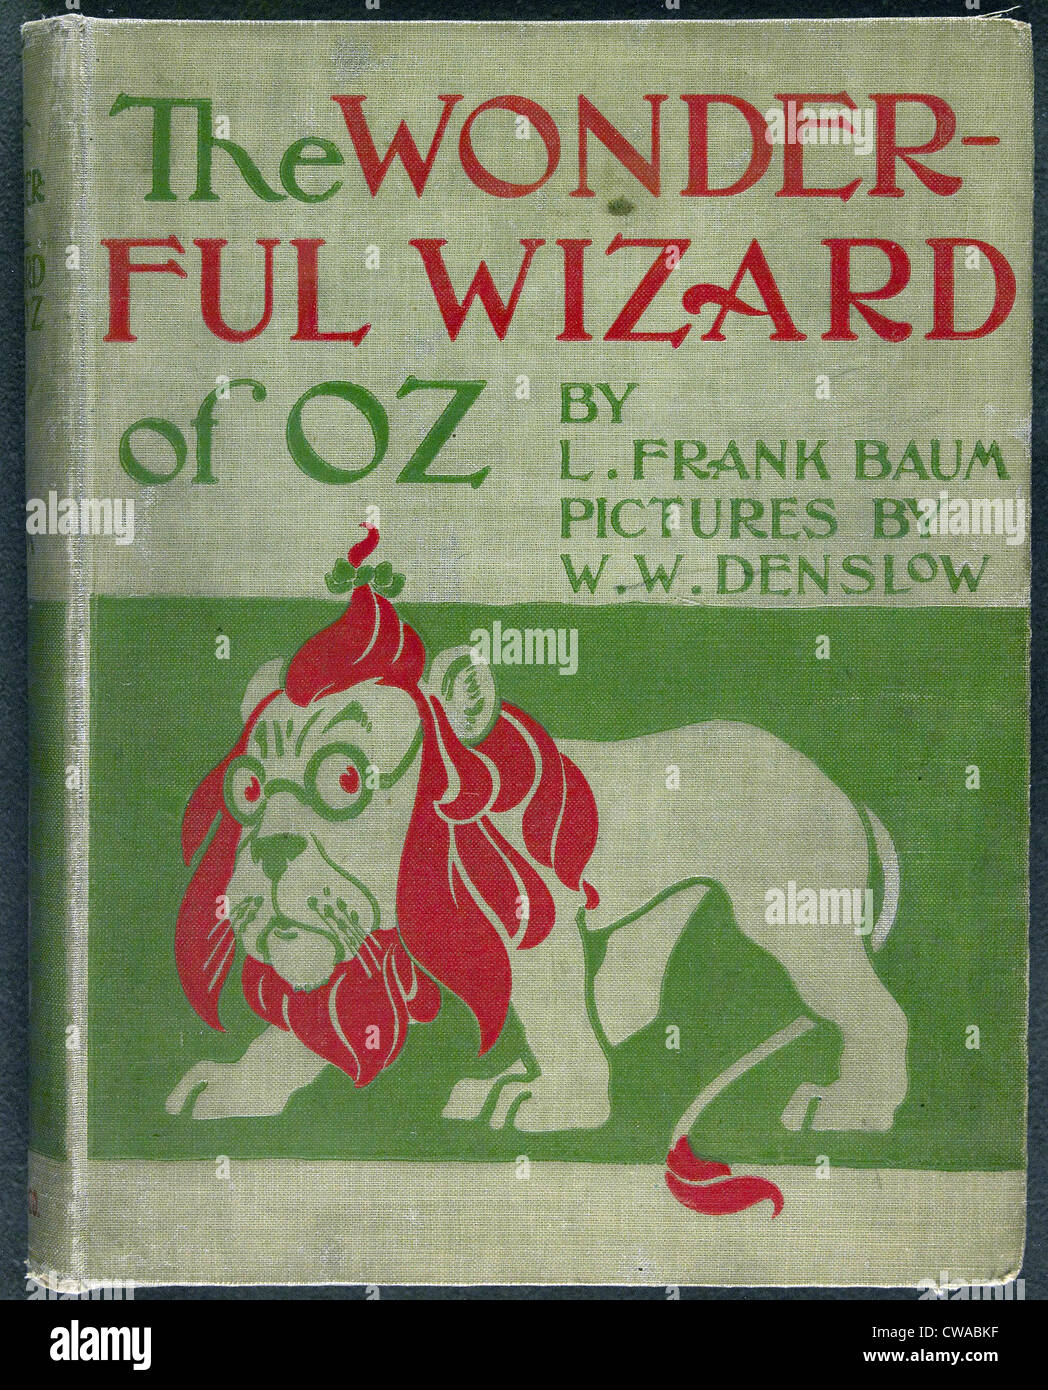 Wonderful Wizard of Oz, première édition, couverture de livre écrit par Frank Lyman Baum en 1900. Banque D'Images